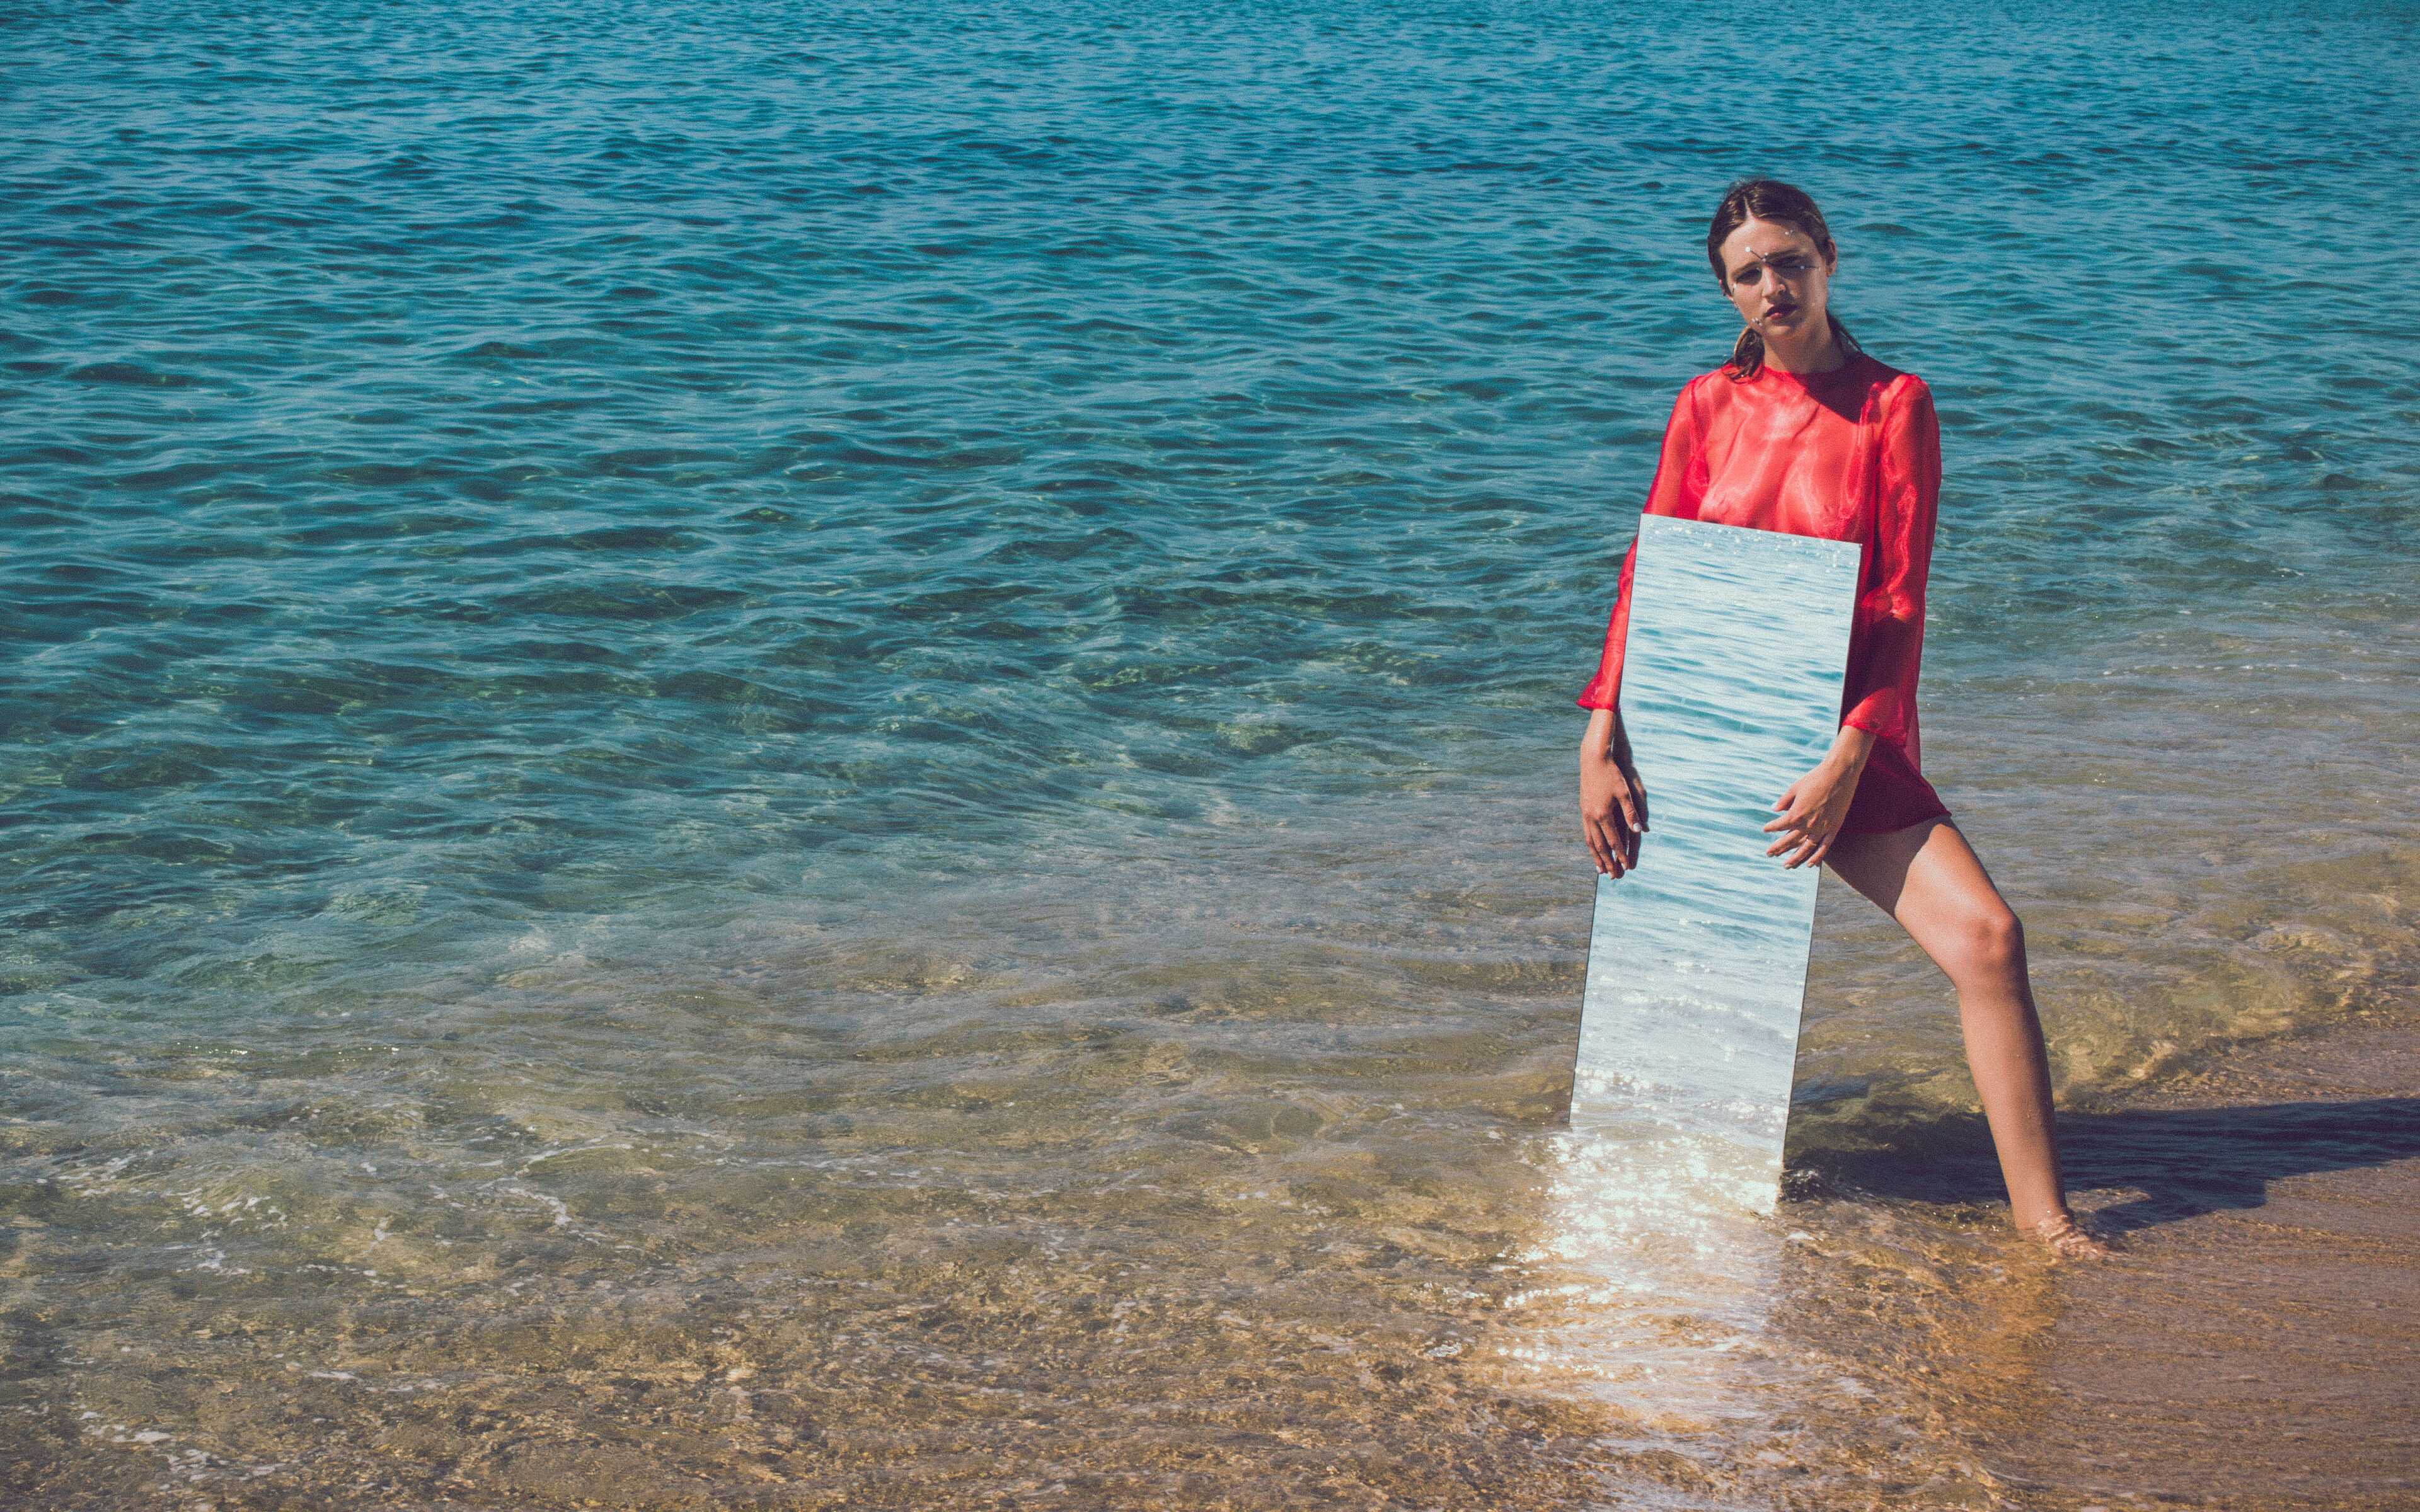 Una dona amb blusa vermella està al mar, aguantant un mirall que reflecteix l'aigua, creant una intersecció surrealista entre imatge i realitat.